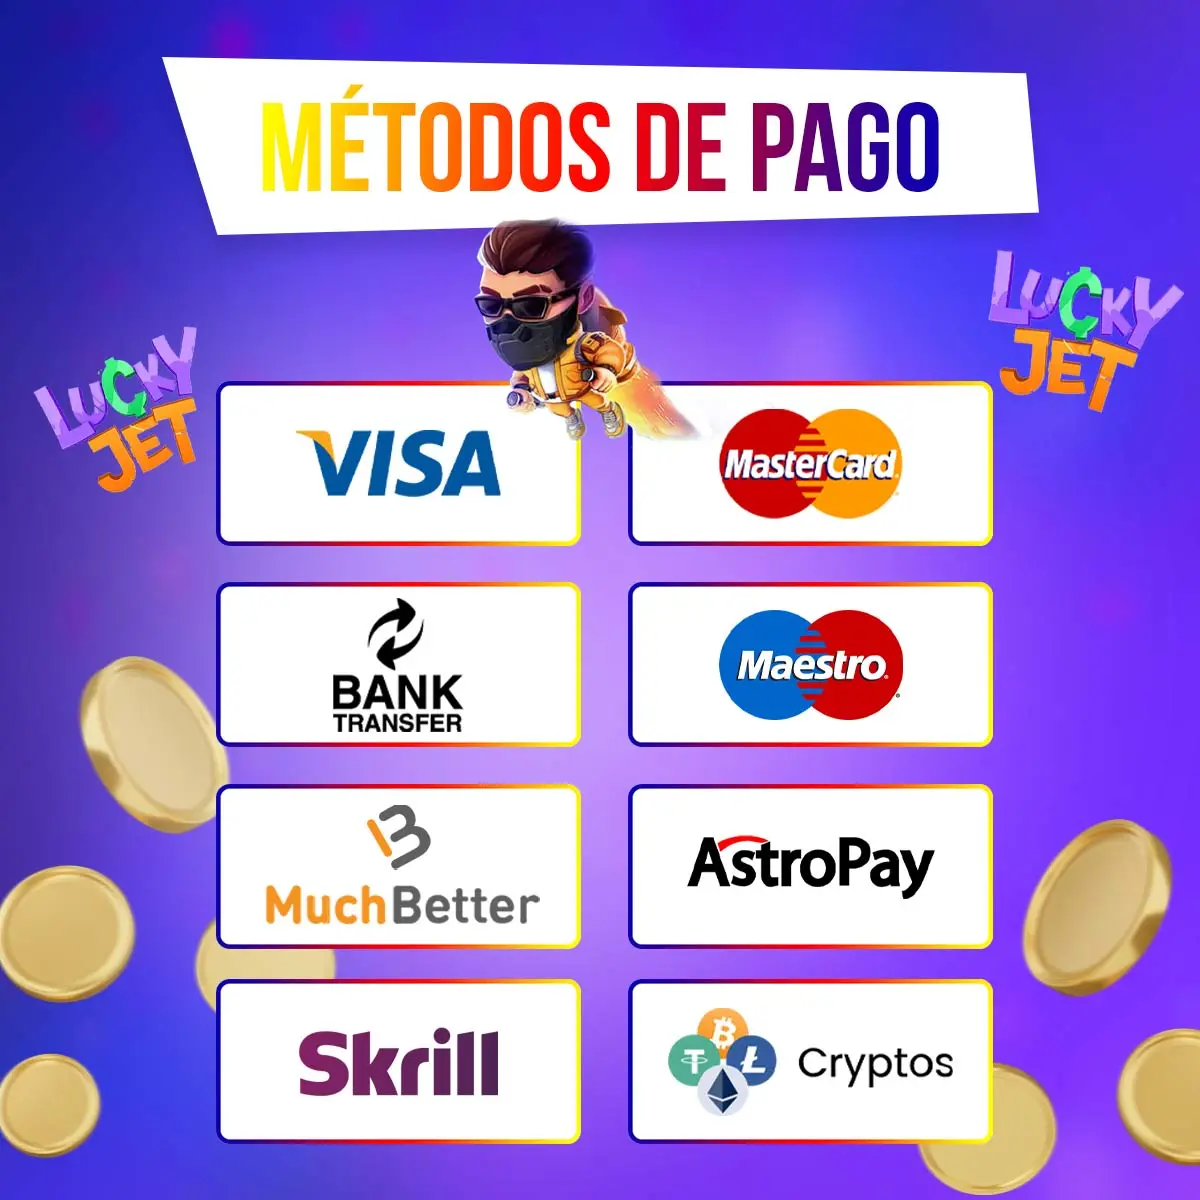 Todos los métodos de pago disponibles para 1Win Lucky Jet en Colombia